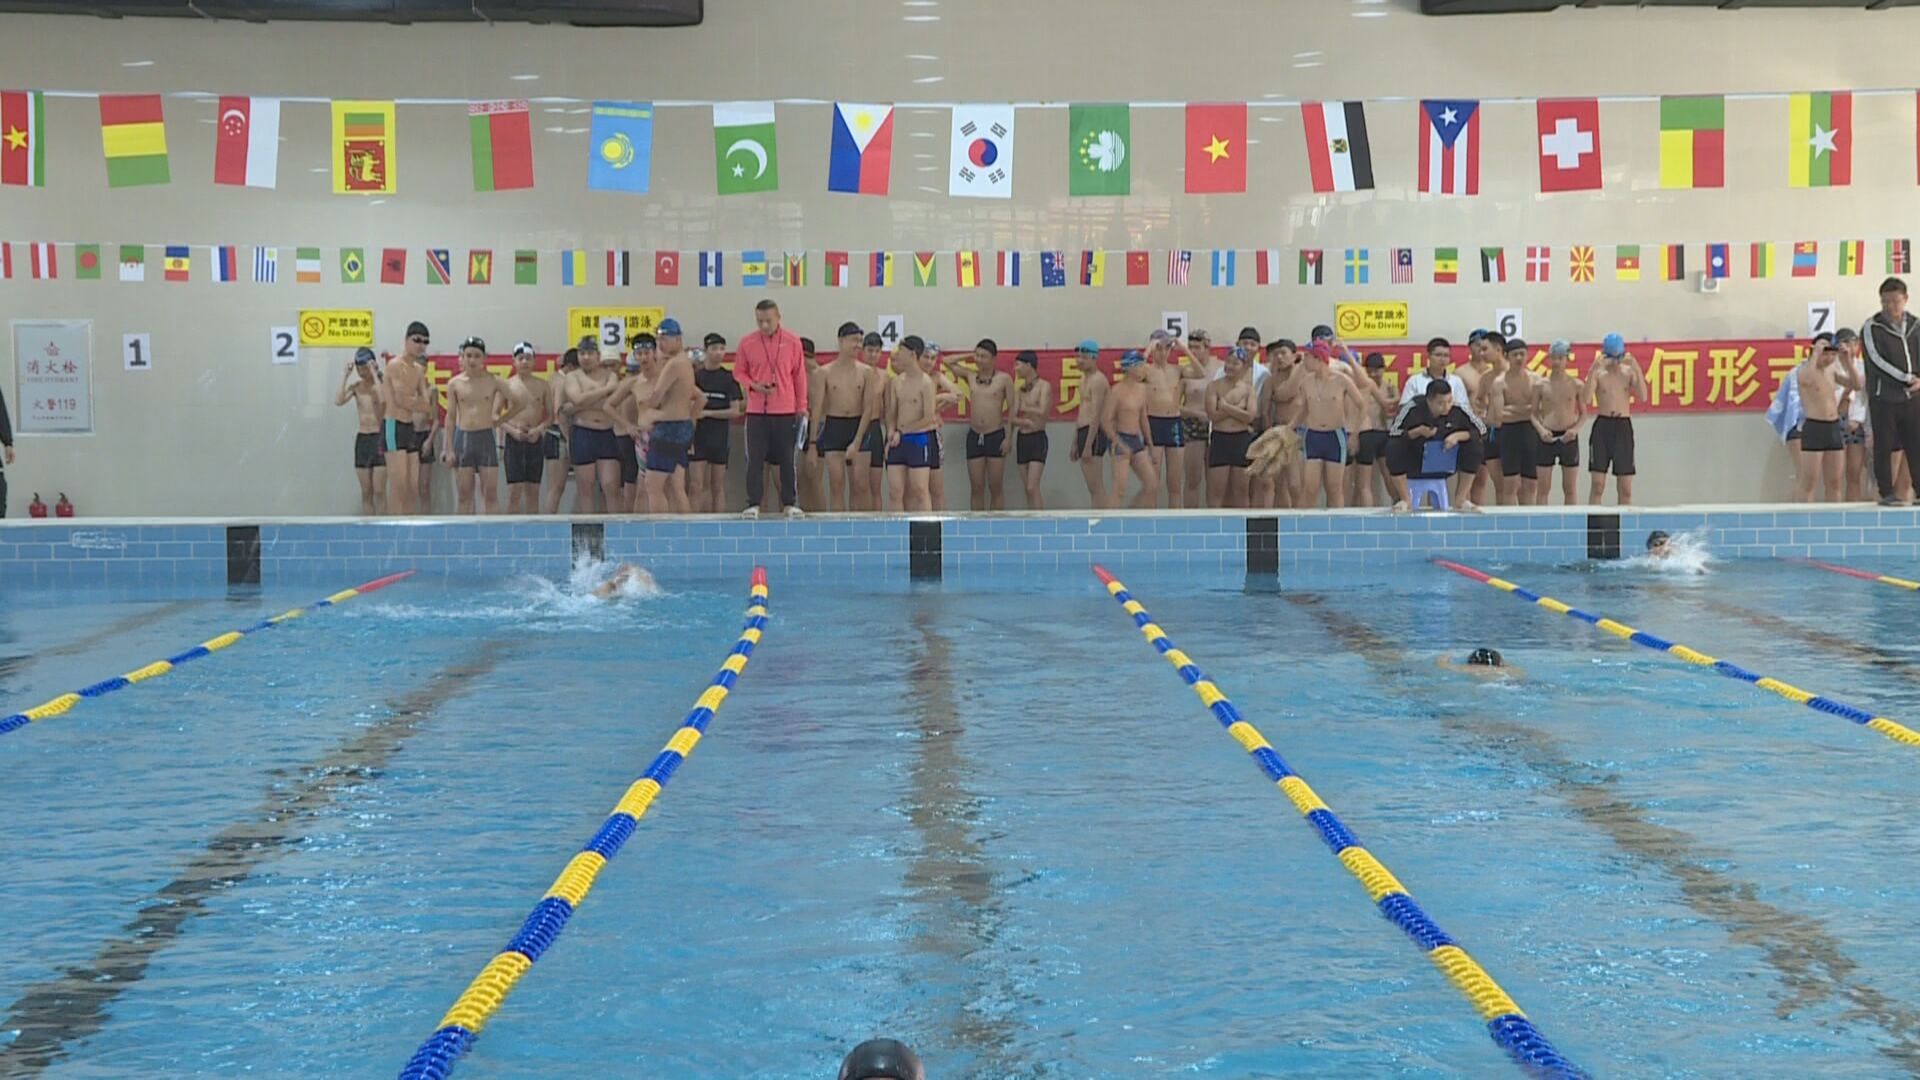 中考体育考试游泳项目越来越受学生青睐